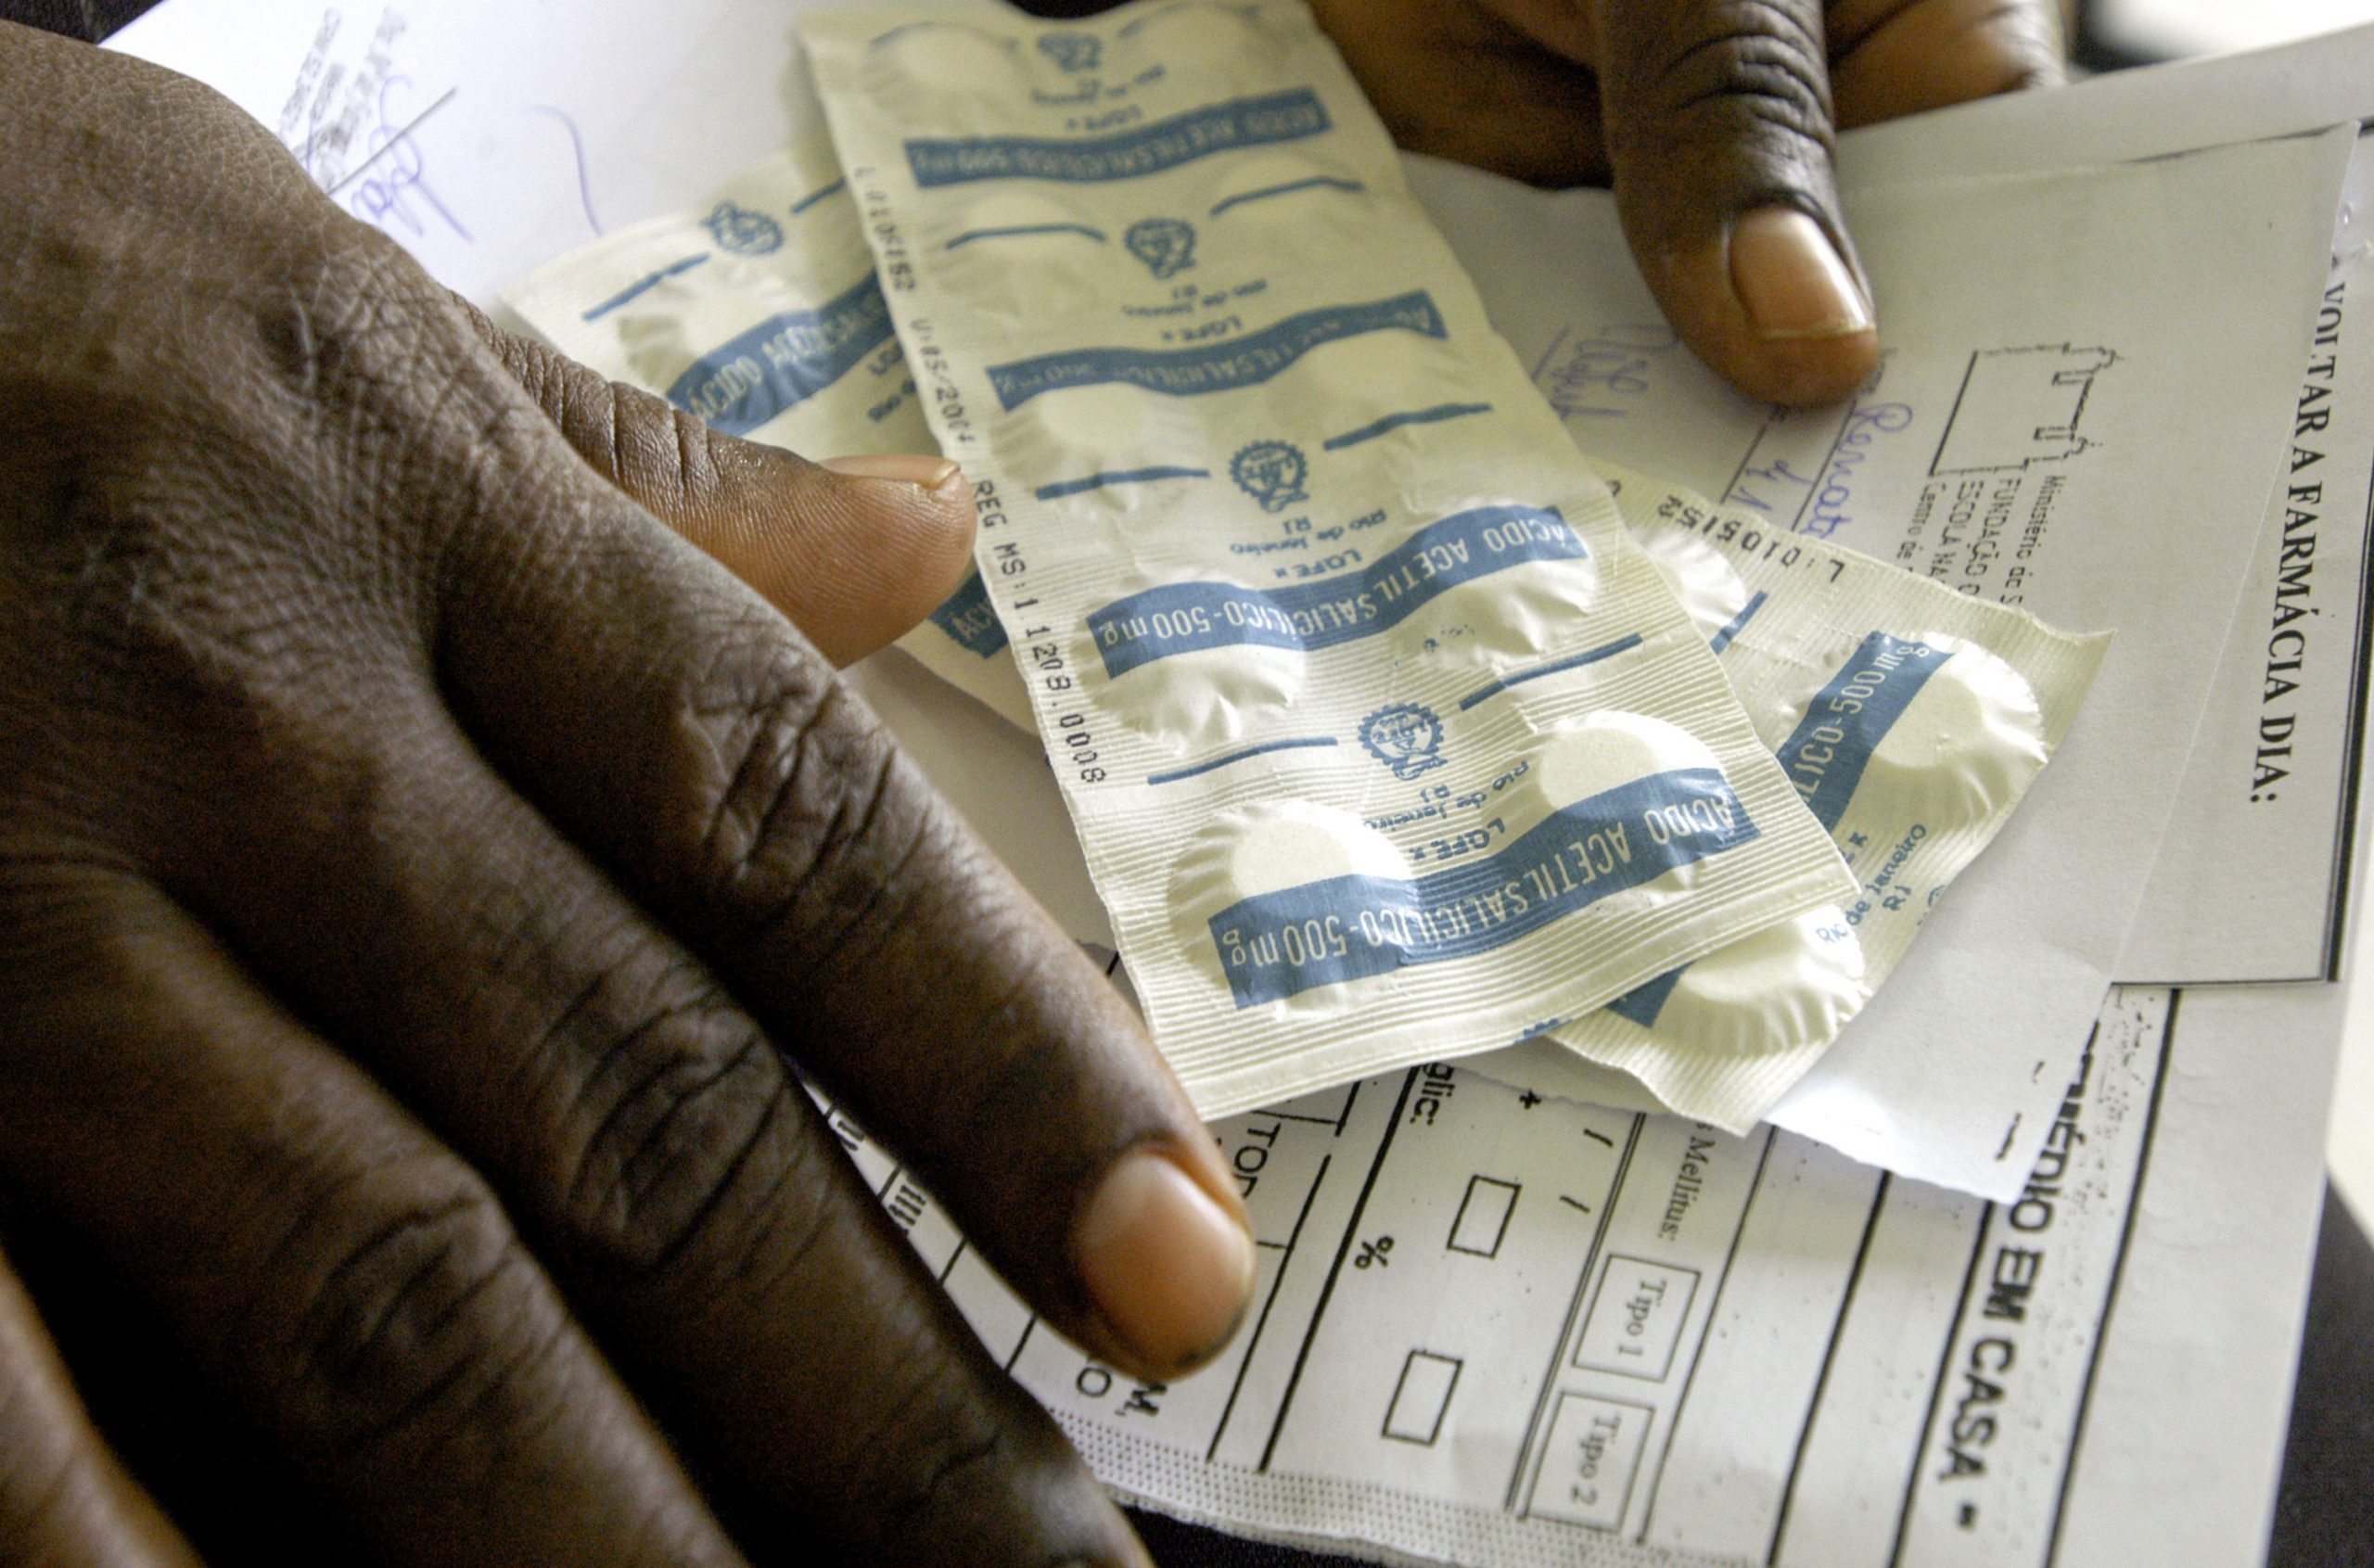 Foto com as mãos, em close, de uma pessoa negra segurando duas cartelas de comprimidos e papeis de receitas médicas.